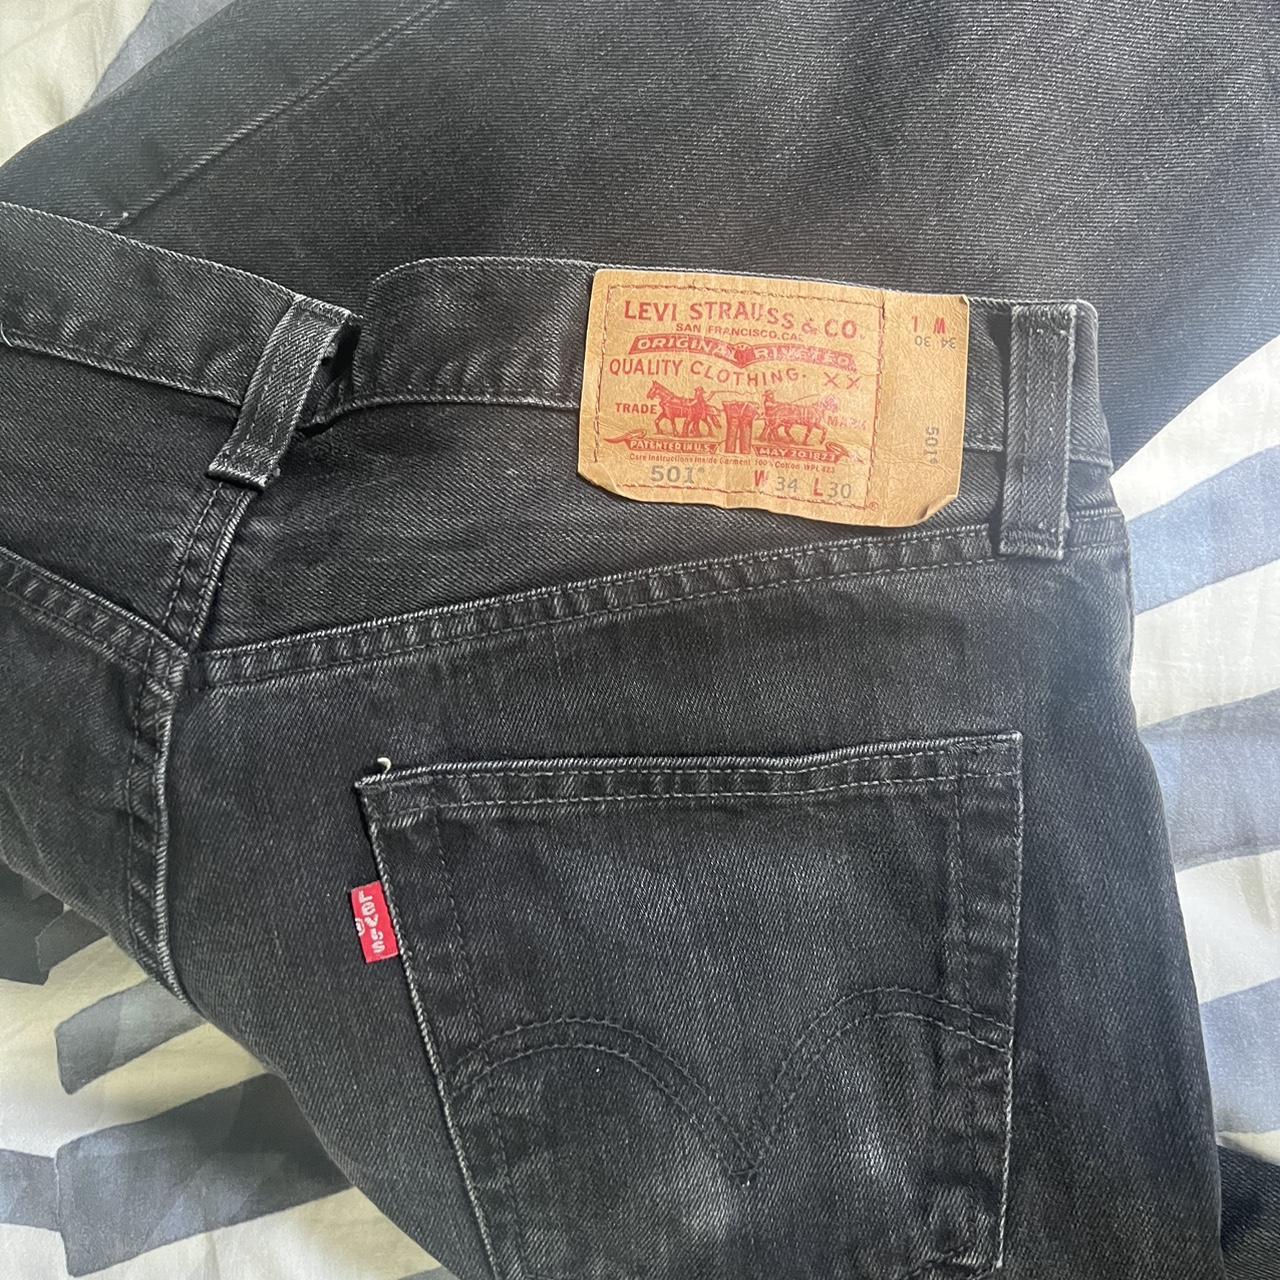 LEVIS 501 black jeans Great condition W34 L30 - Depop